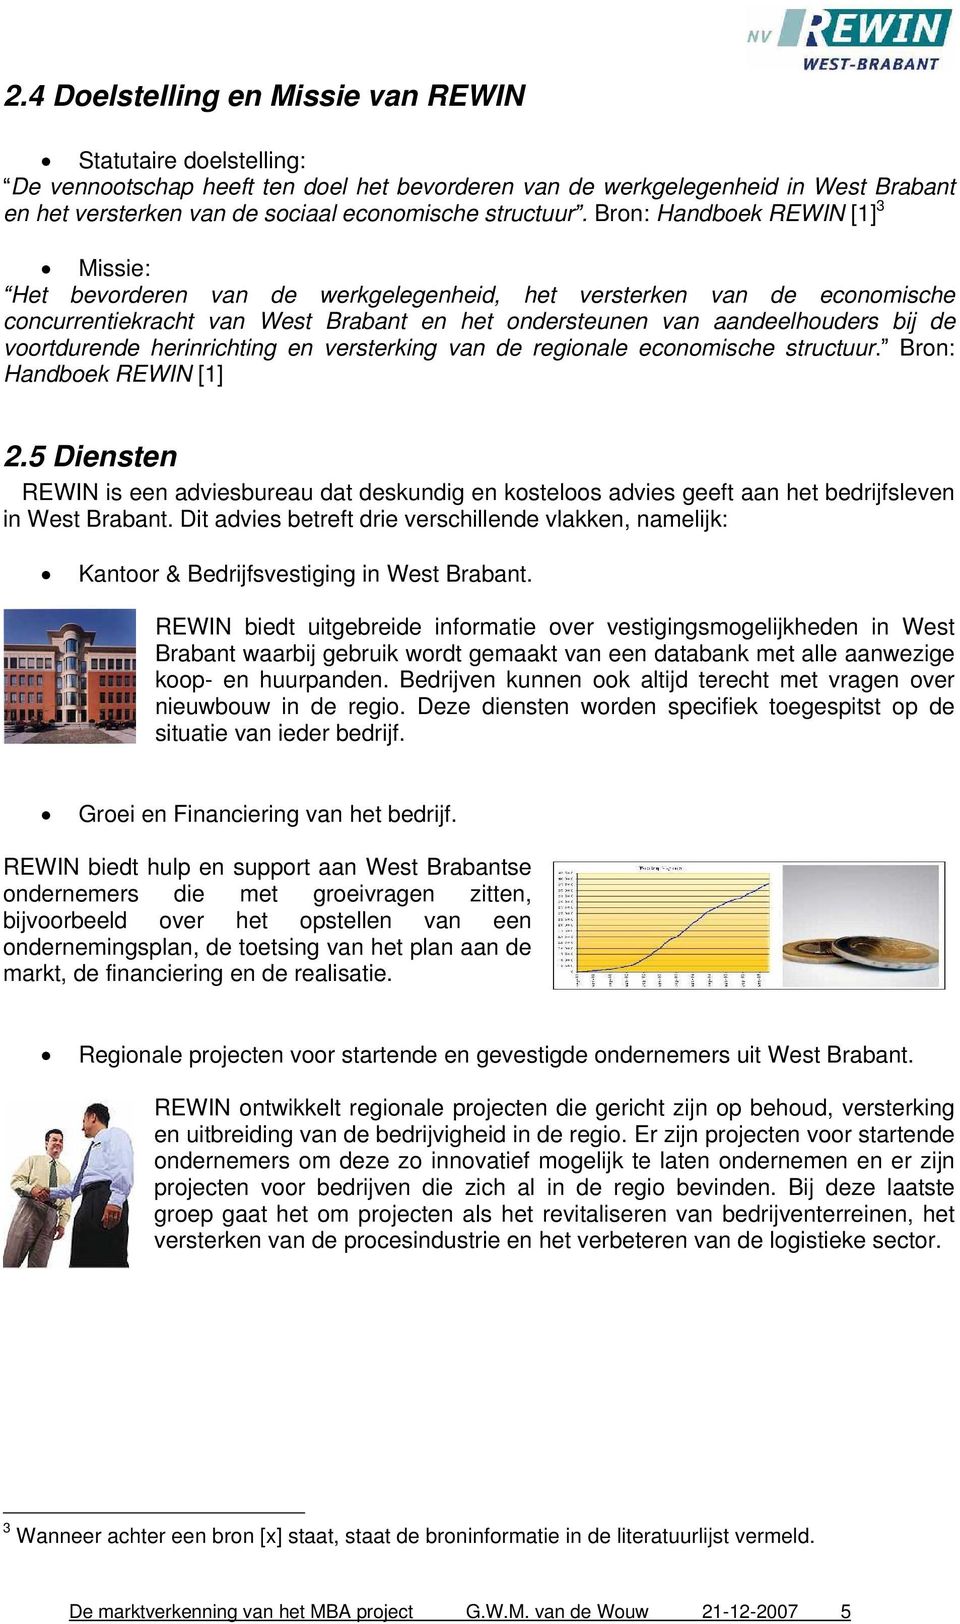 Bron: Handboek REWIN [1] 3 Missie: Het bevorderen van de werkgelegenheid, het versterken van de economische concurrentiekracht van West Brabant en het ondersteunen van aandeelhouders bij de